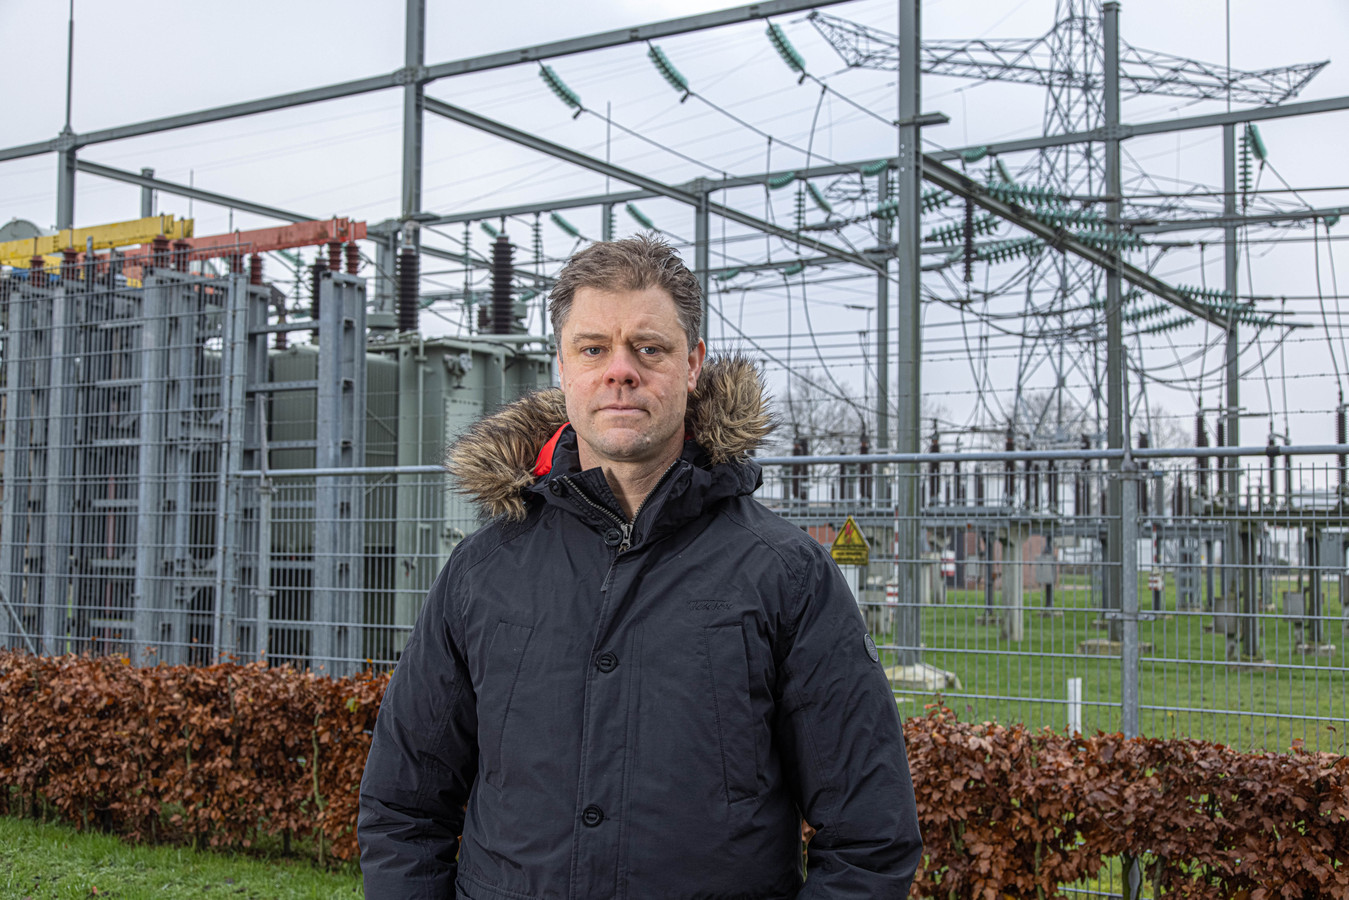 Han Slootweg. hoogleraar elektriciteitsvoorziening bij de TU Eindhoven en directeur Netstrategie van netbeheerder Enexis.